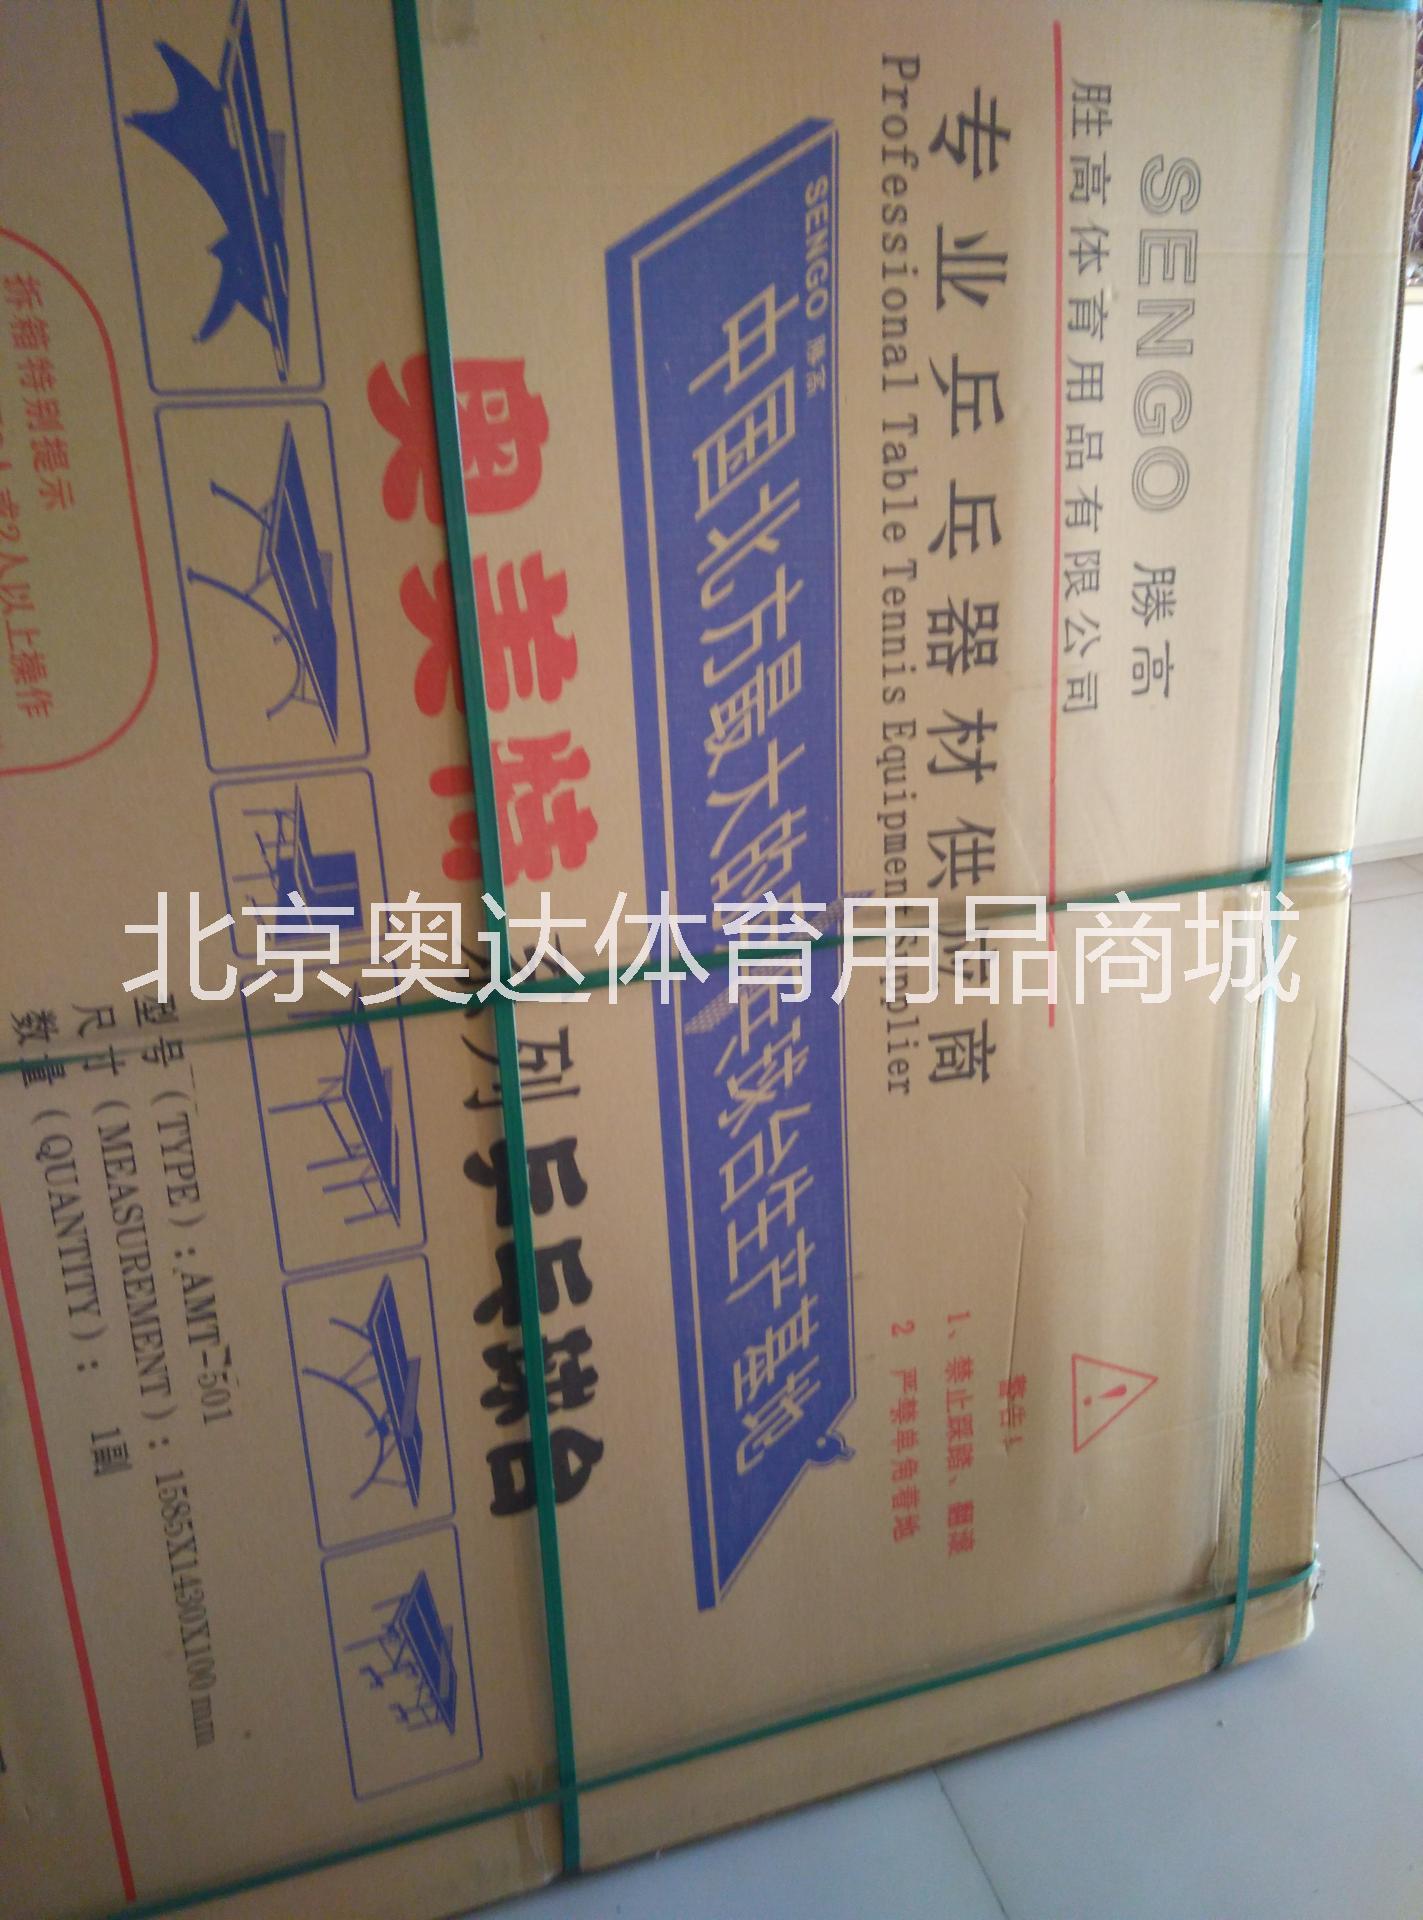 供应乒乓球桌生产厂家 北京红双喜乒乓球桌 乒乓球桌厂家直销图片